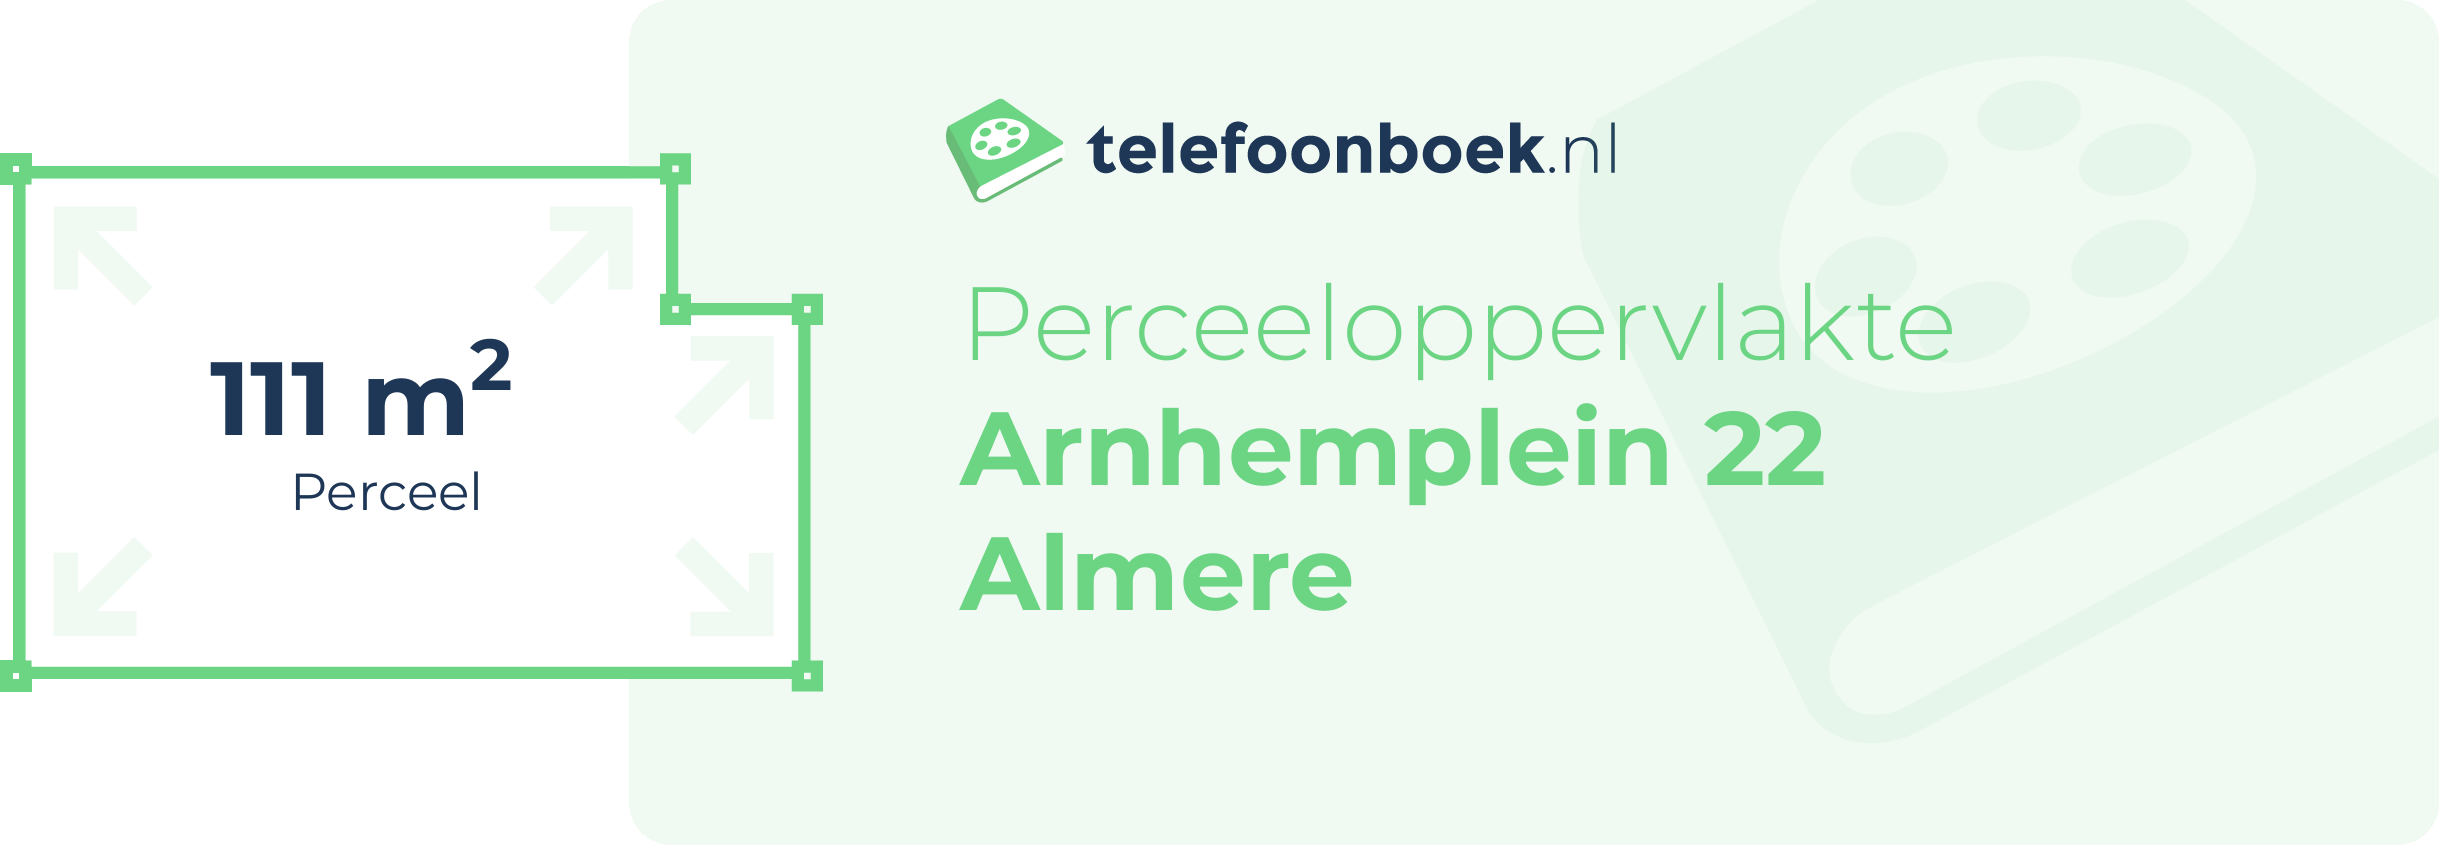 Perceeloppervlakte Arnhemplein 22 Almere